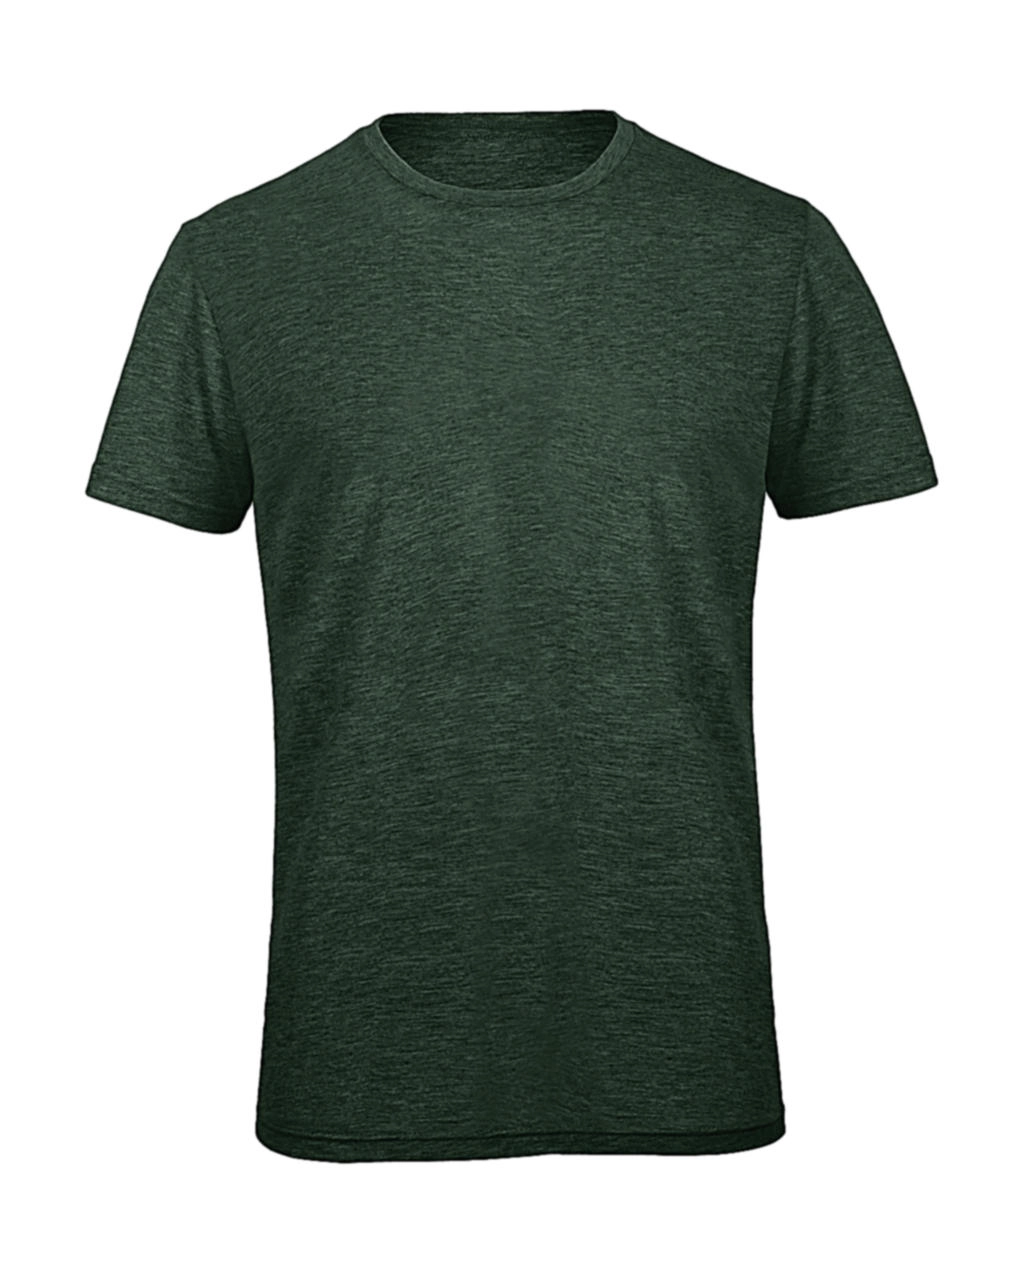 Triblend/men T-Shirt zum Besticken und Bedrucken in der Farbe Heather Forest mit Ihren Logo, Schriftzug oder Motiv.